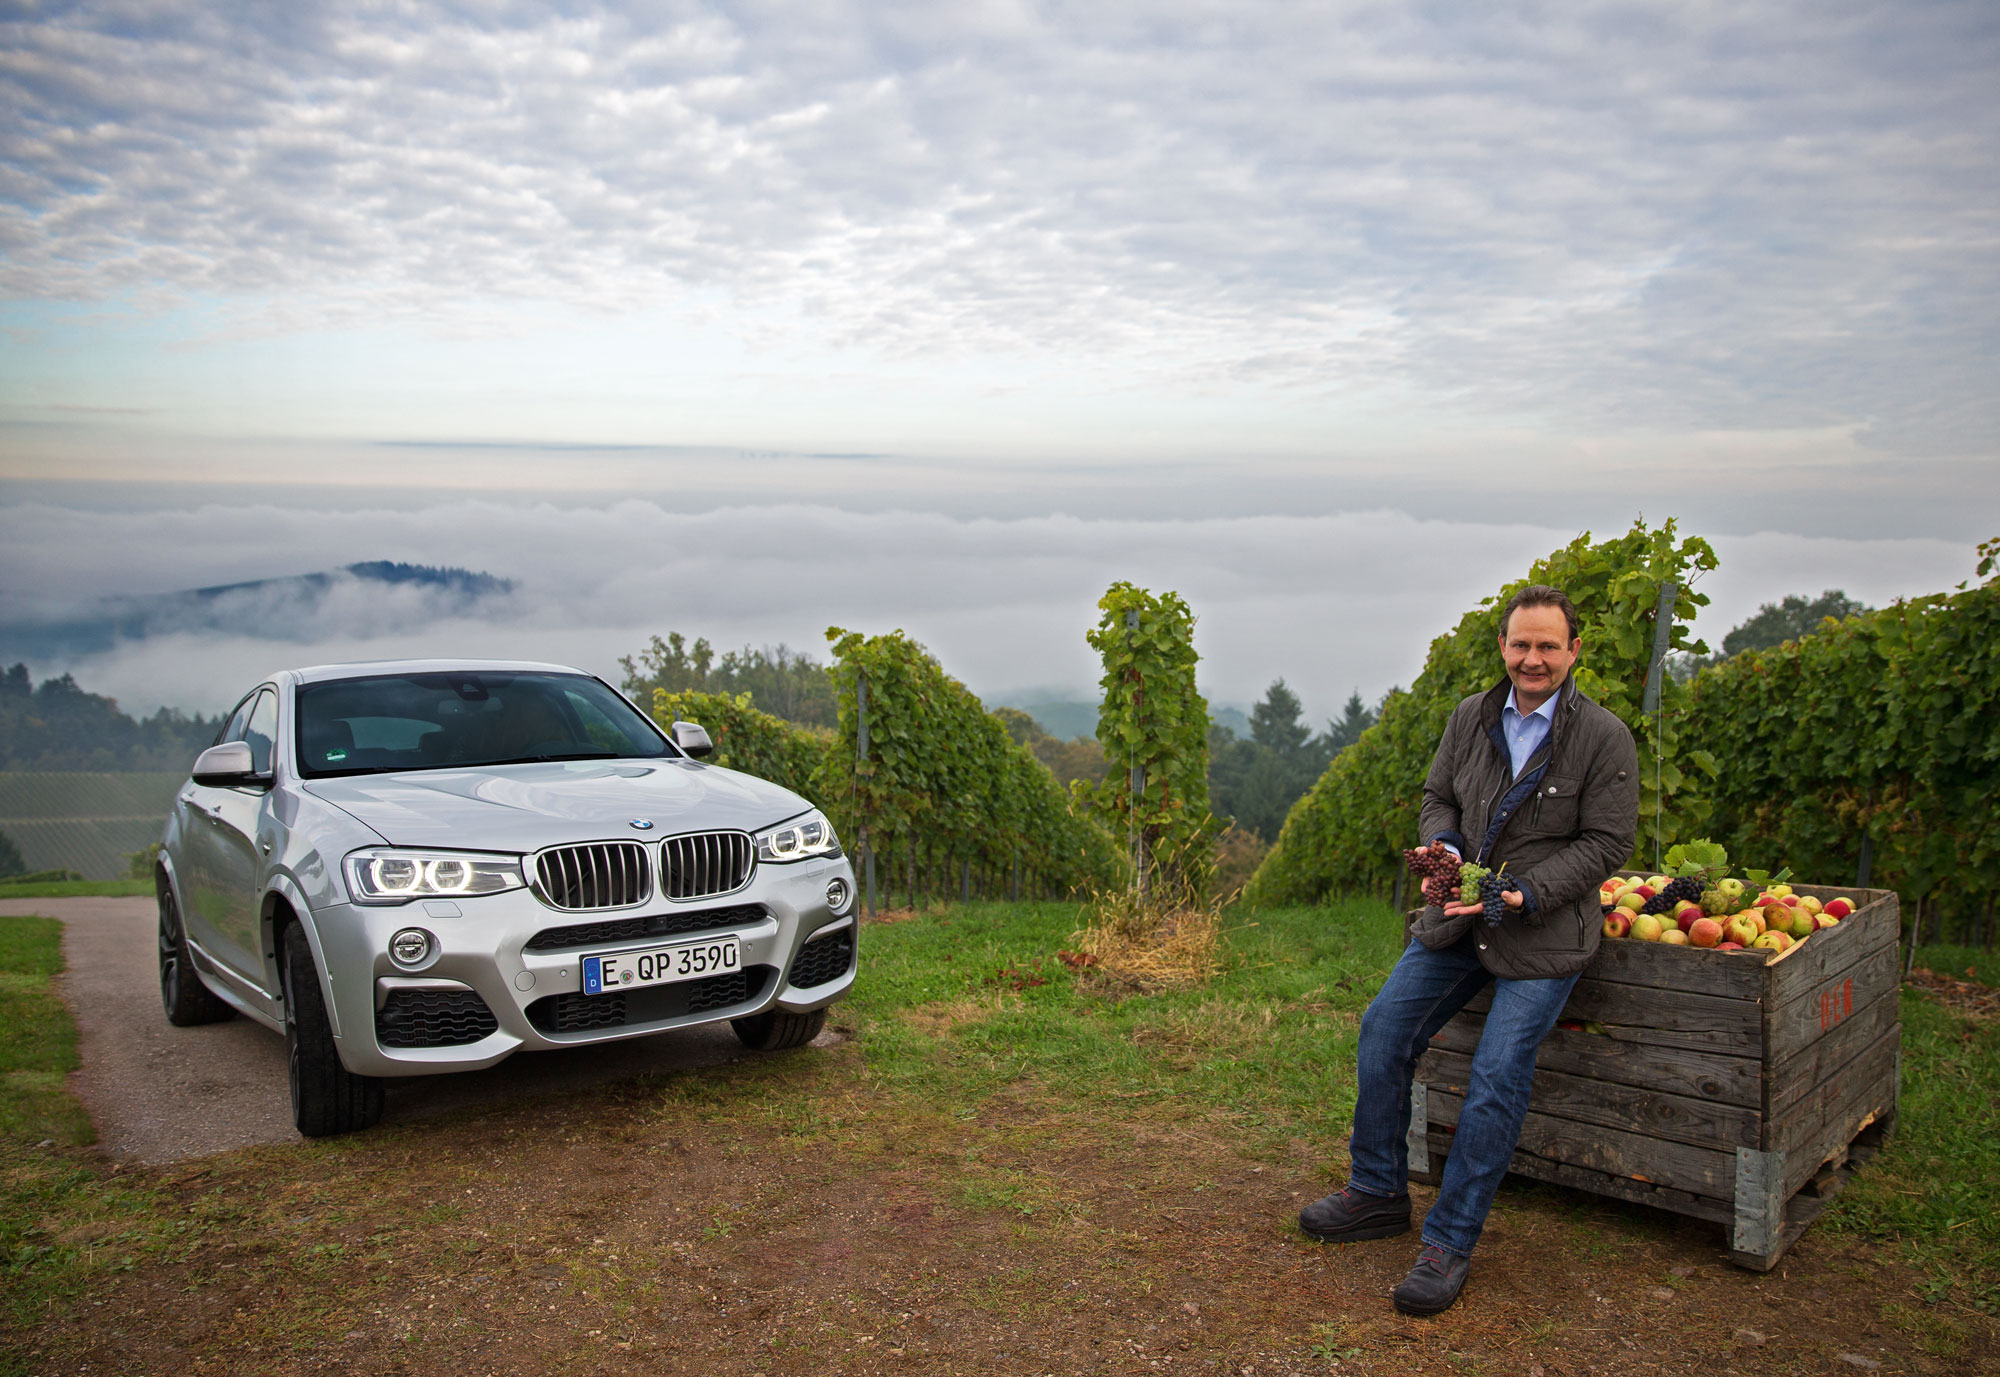 Mit dem BMW X4 aus Essen bestens angekommen – oben über den Wolken treffen wir als Top Ruhr Team Siegbert Bimmerle, der vor der Lese die Reben genau unter die Lupe nimmt